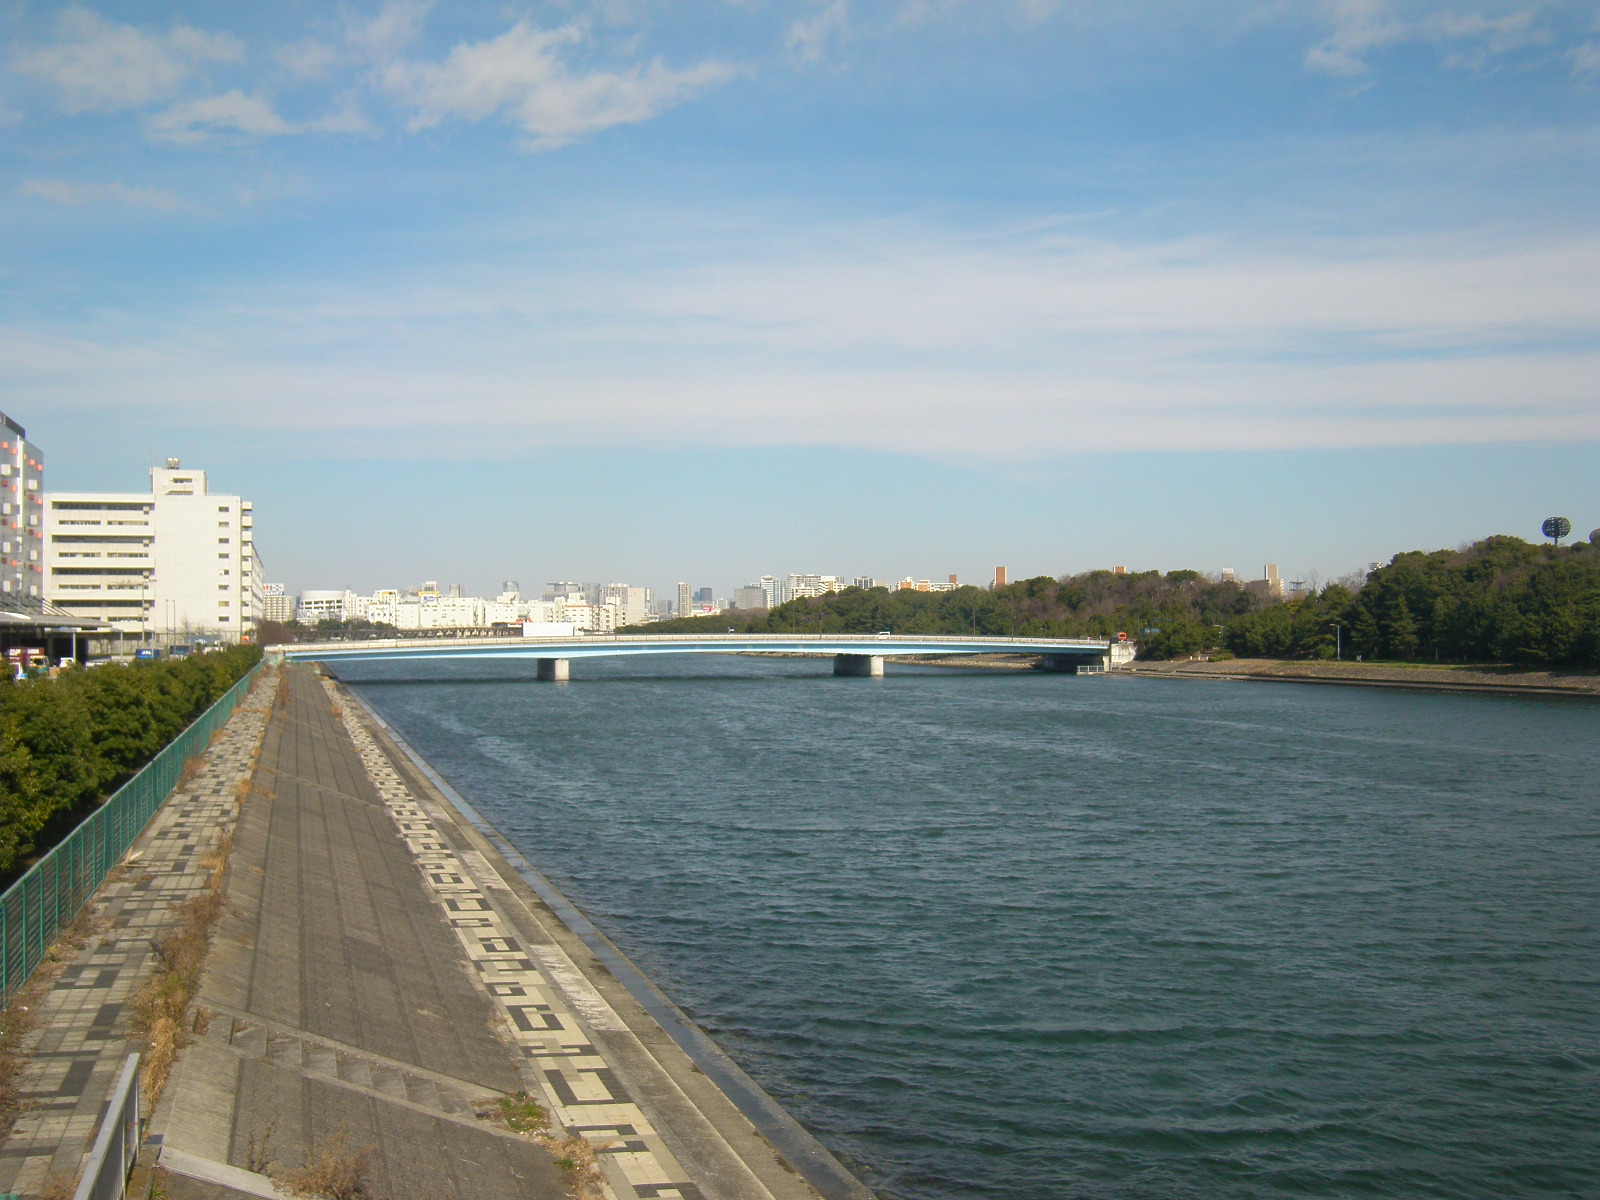 京浜運河 Wikipedia